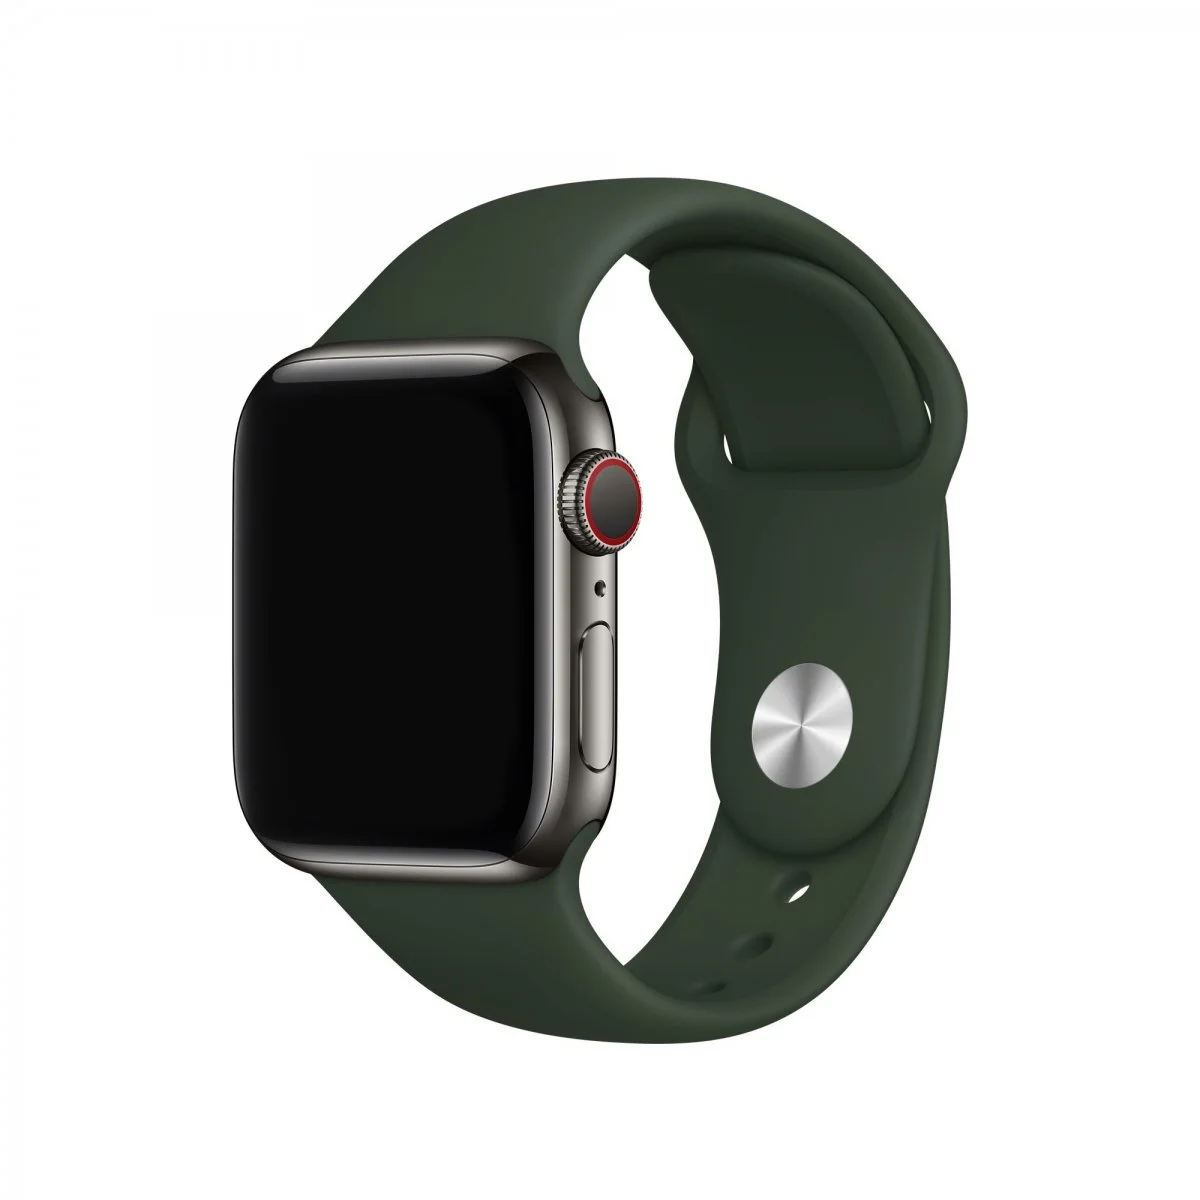 Řemínek iMore SmoothBand pro Apple Watch Series 1/2/3 (38mm) - Kypersky zelený